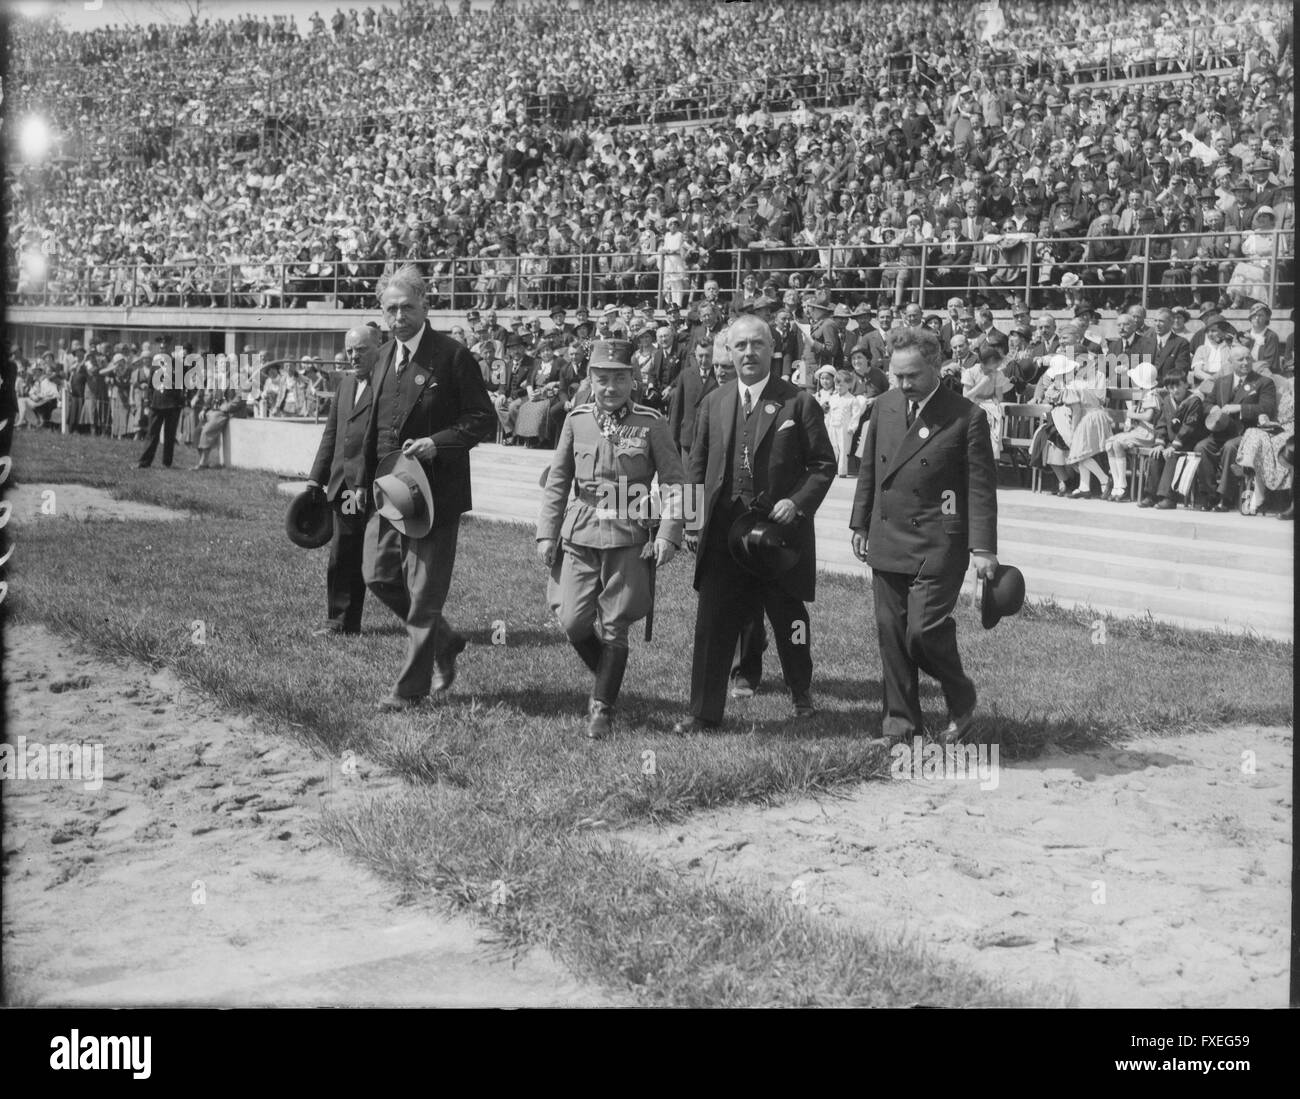 Kinder-Huldigung mit Festspiel im Wiener Stadion, 1.5.1934 Stock Photo